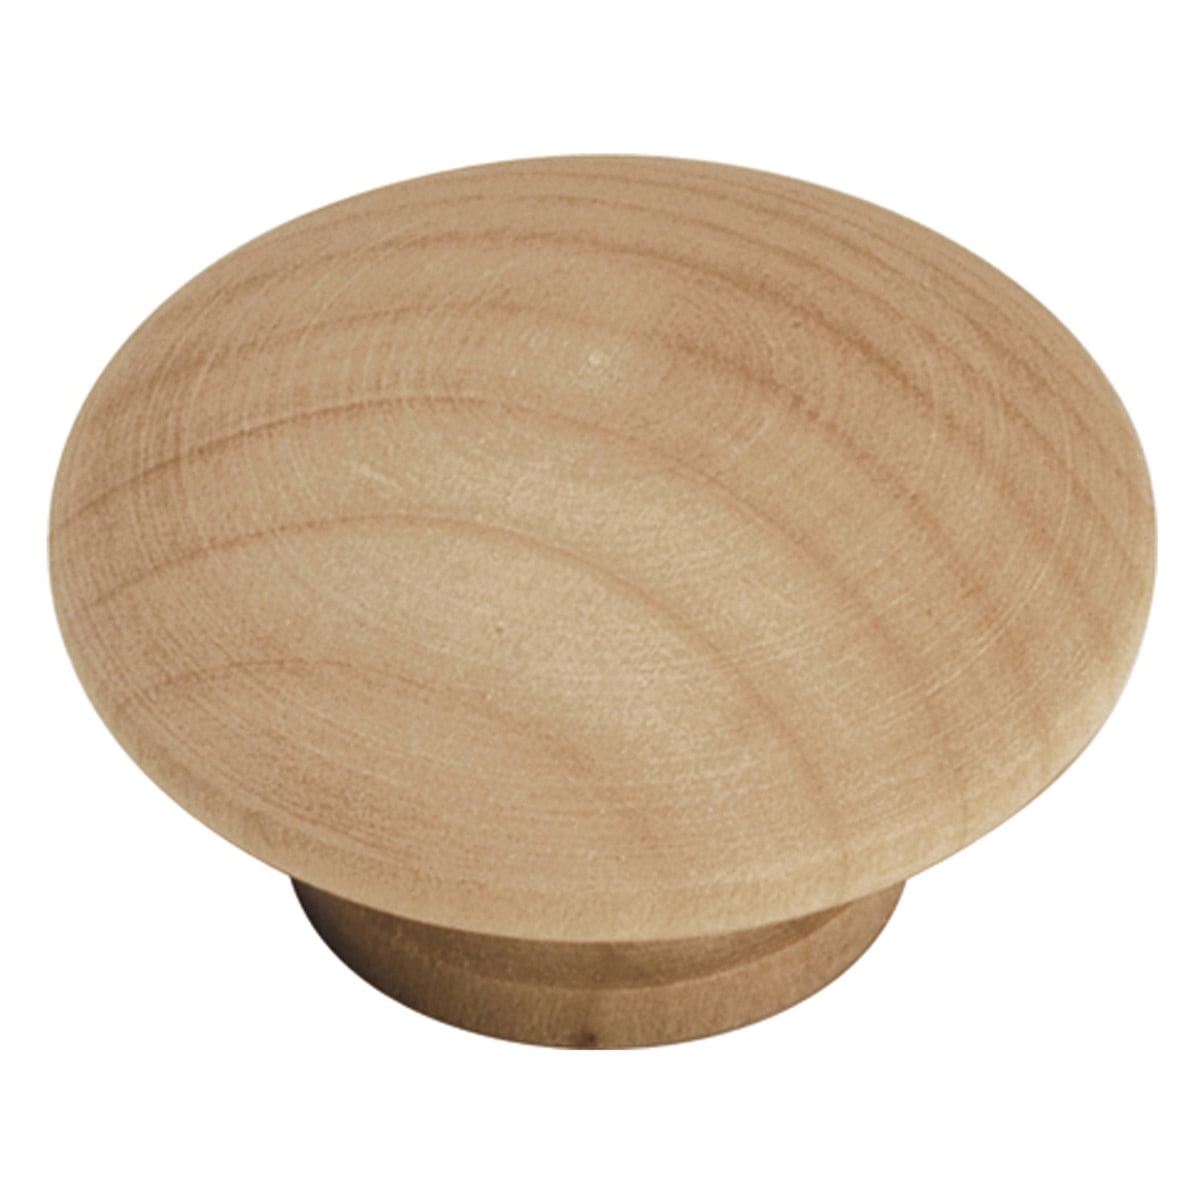 P10506C-BIR  Birch Wood 1 1/4" Round Ball Cabinet Drawer Knob 